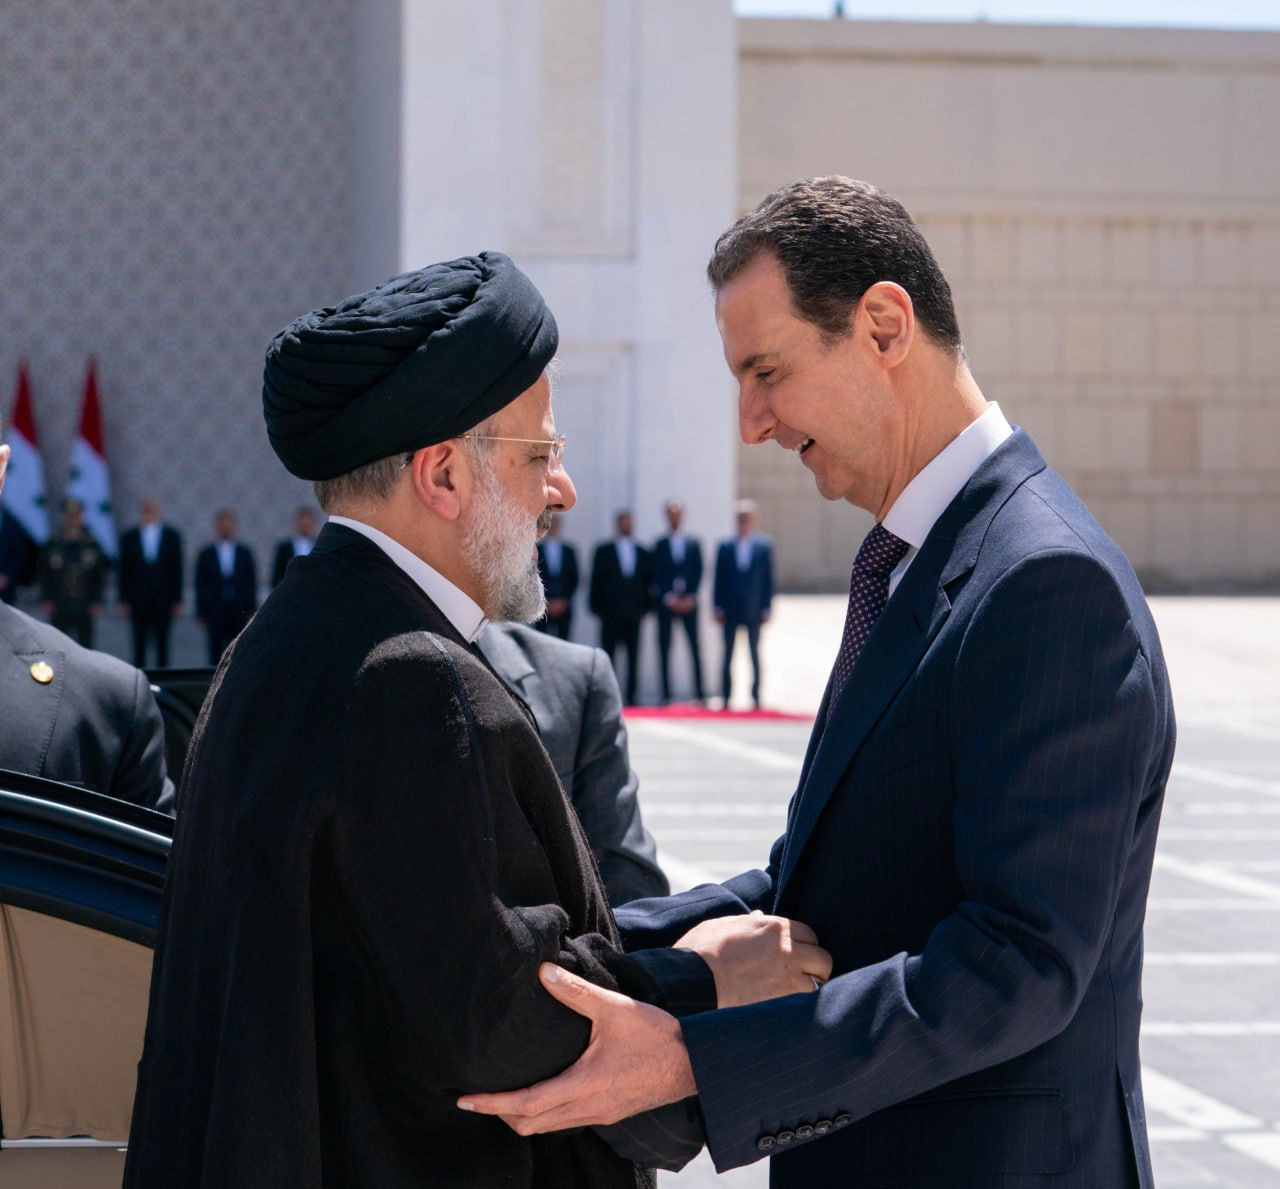 سيكون من الصعب ايضاً نسيان صورة السيد رئيسي إلى جانب نظيره السوري على أبواب قصر الشعب